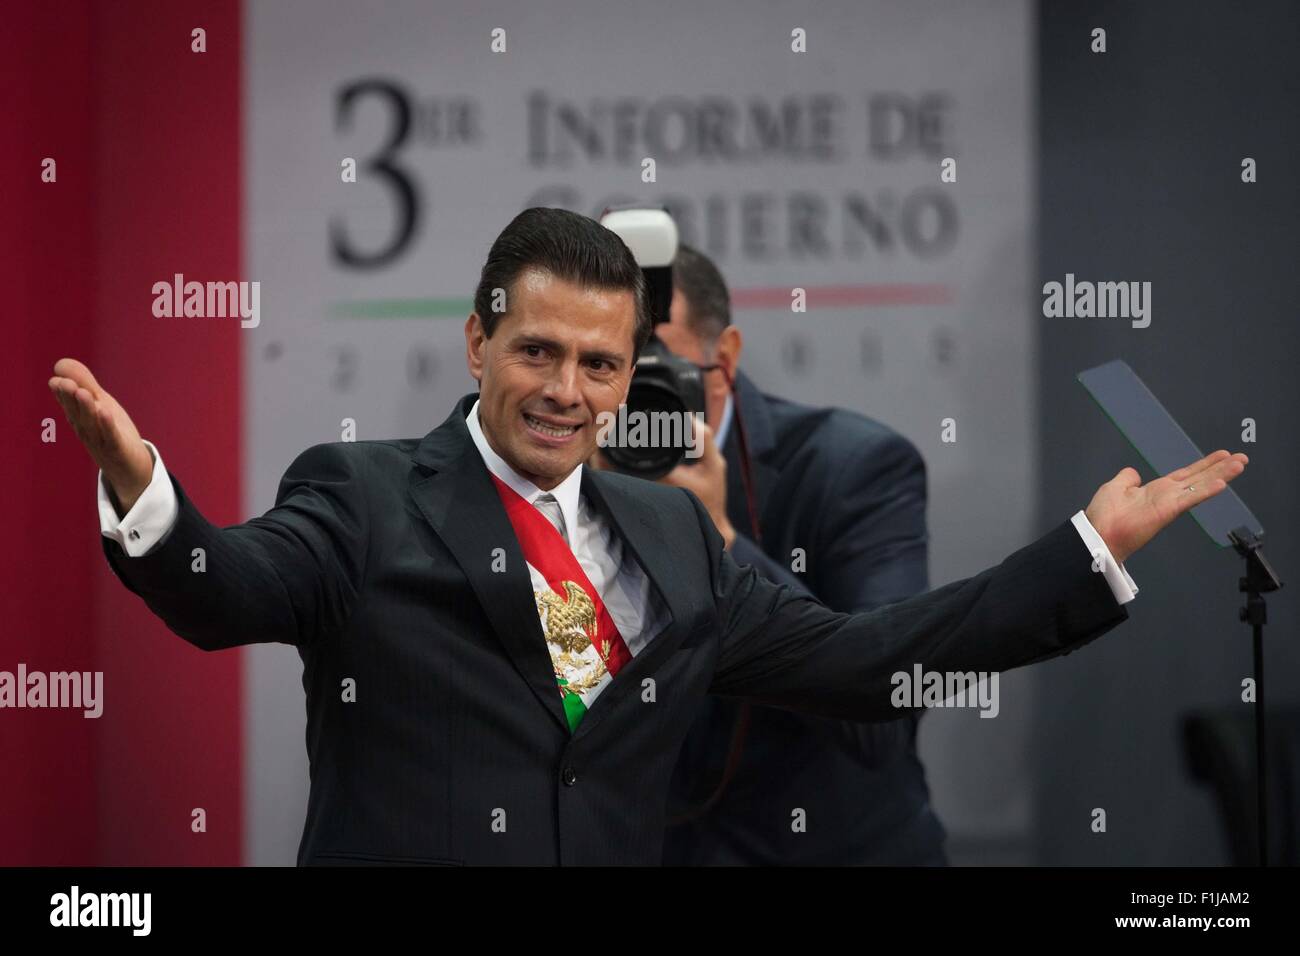 Mexico City, Mexiko. 2. Sep, 2015. Mexikanische Präsident Enrique Pena Nieto liefert seinen dritten Zustand der Nation-Bericht in Mexiko-Stadt, Hauptstadt von Mexiko, am 2. September 2015. © Pedro Mera/Xinhua/Alamy Live-Nachrichten Stockfoto